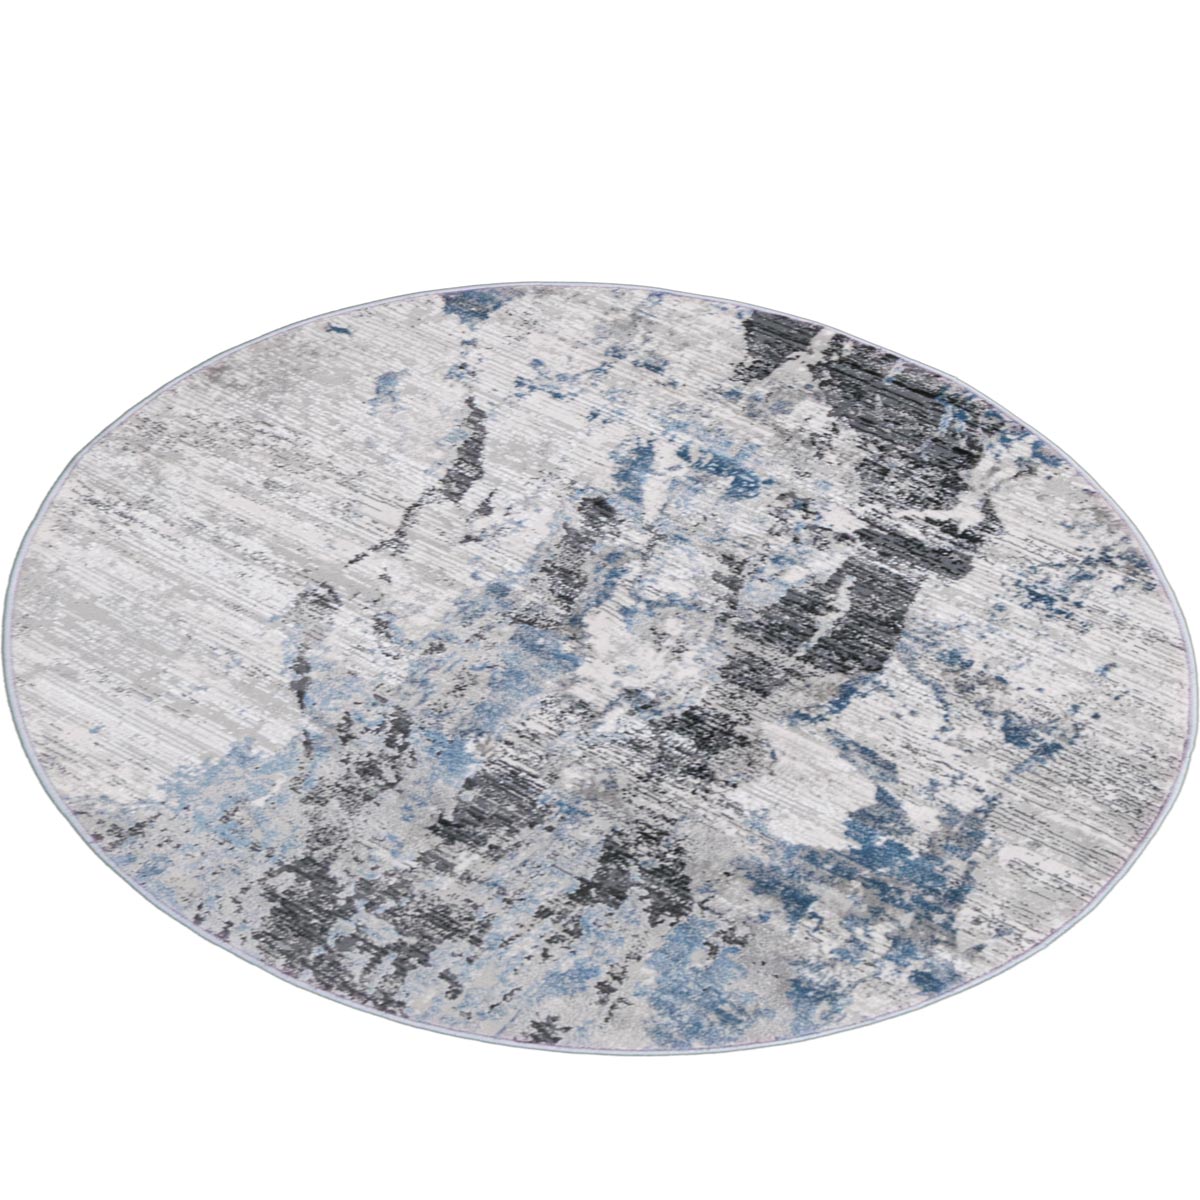 שטיח טורונטו 21 אפור כהה/אפור/כחול עגול | השטיח האדום